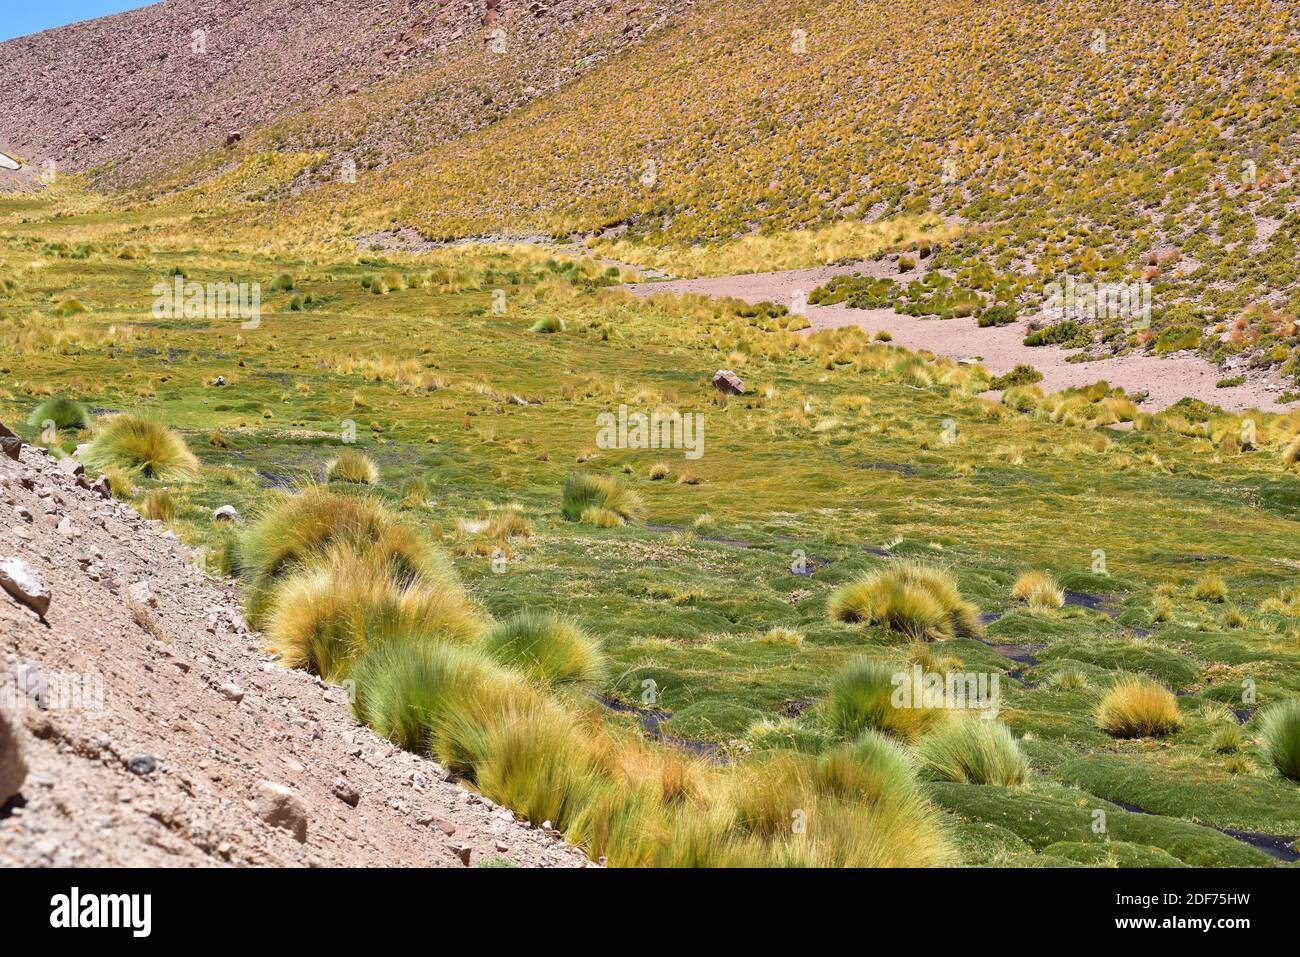 El bofedal es una especie de humedal que se encuentra en los Andes de Bolivia, Chile y Perú. Este ecosistema está dominado por plantas de Juncaceae como Distichia muscoides y. Foto de stock